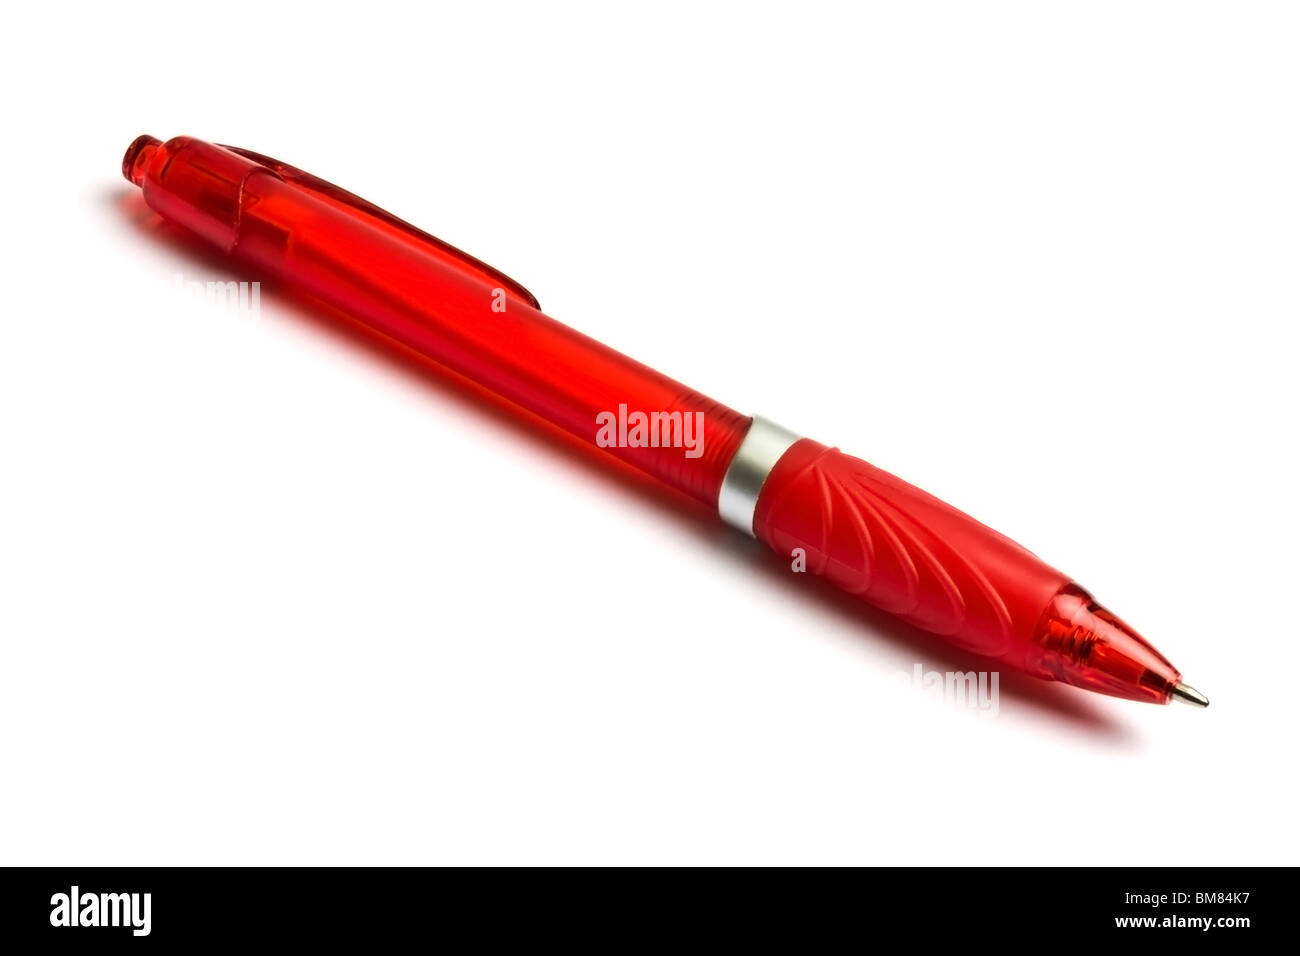 Penna rossa immagini e fotografie stock ad alta risoluzione - Alamy